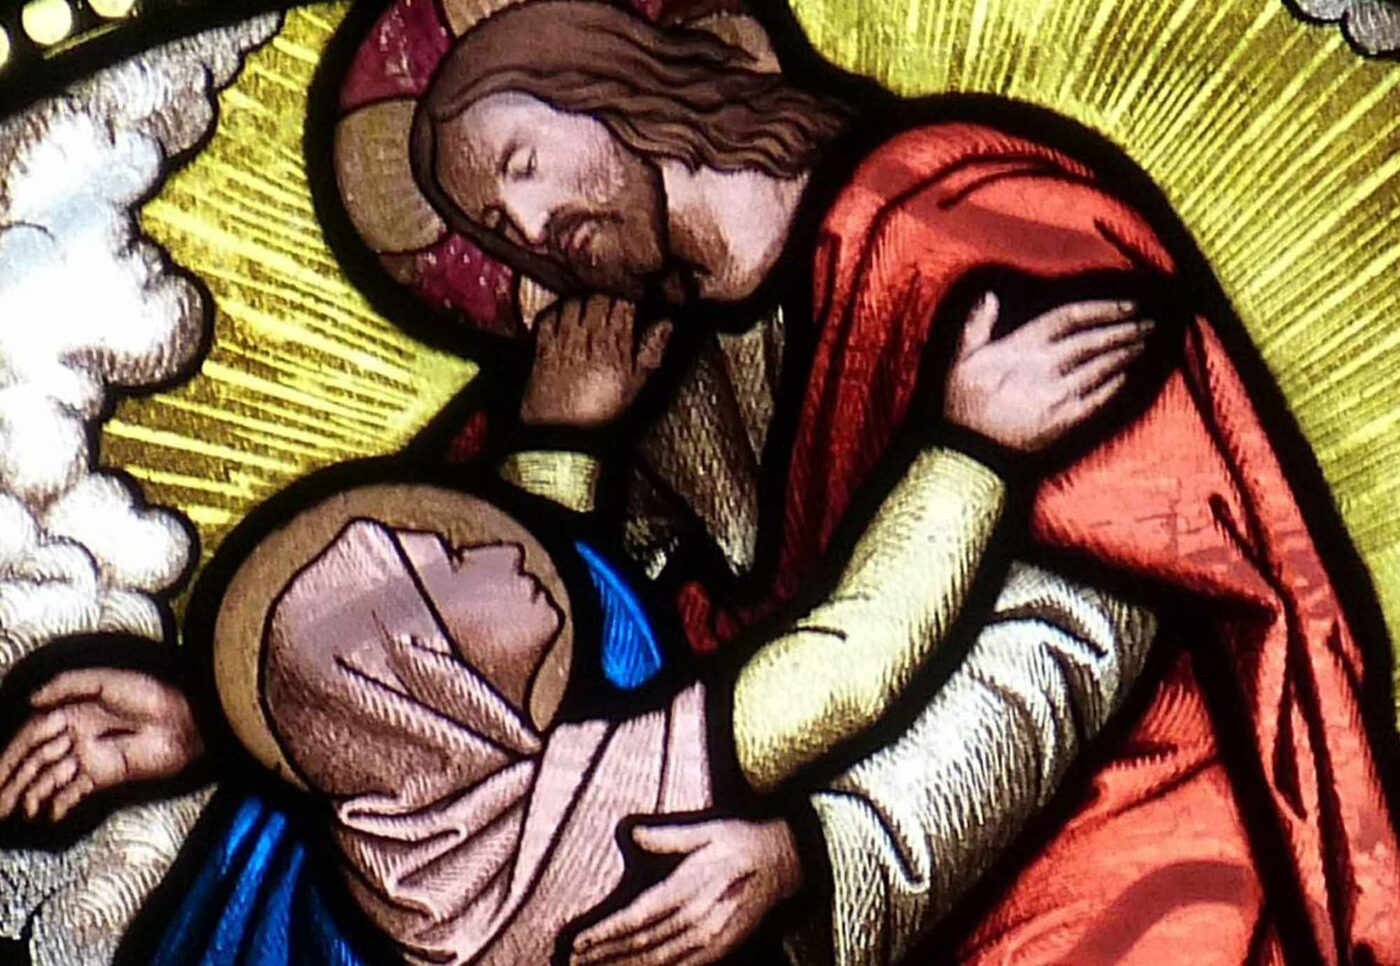 Pfarrerin Schnizlein zu Maria: "Jesus ist seinen eigenen Weg gegangen. Immer wieder weg von Dir. Aber Du hast ihn niemals aufgegeben!" Foto: falco/Pixabay